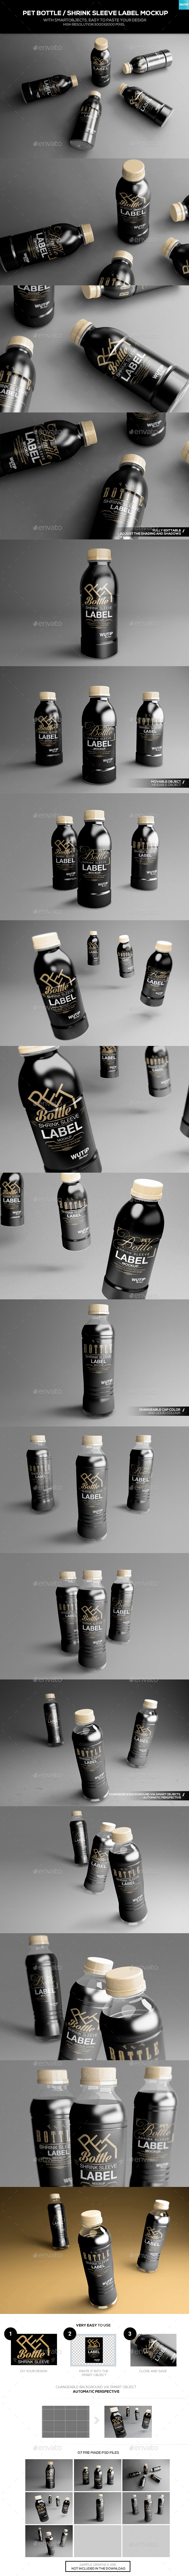 PET Bottle/ Shrink Sleeve Label Mockup